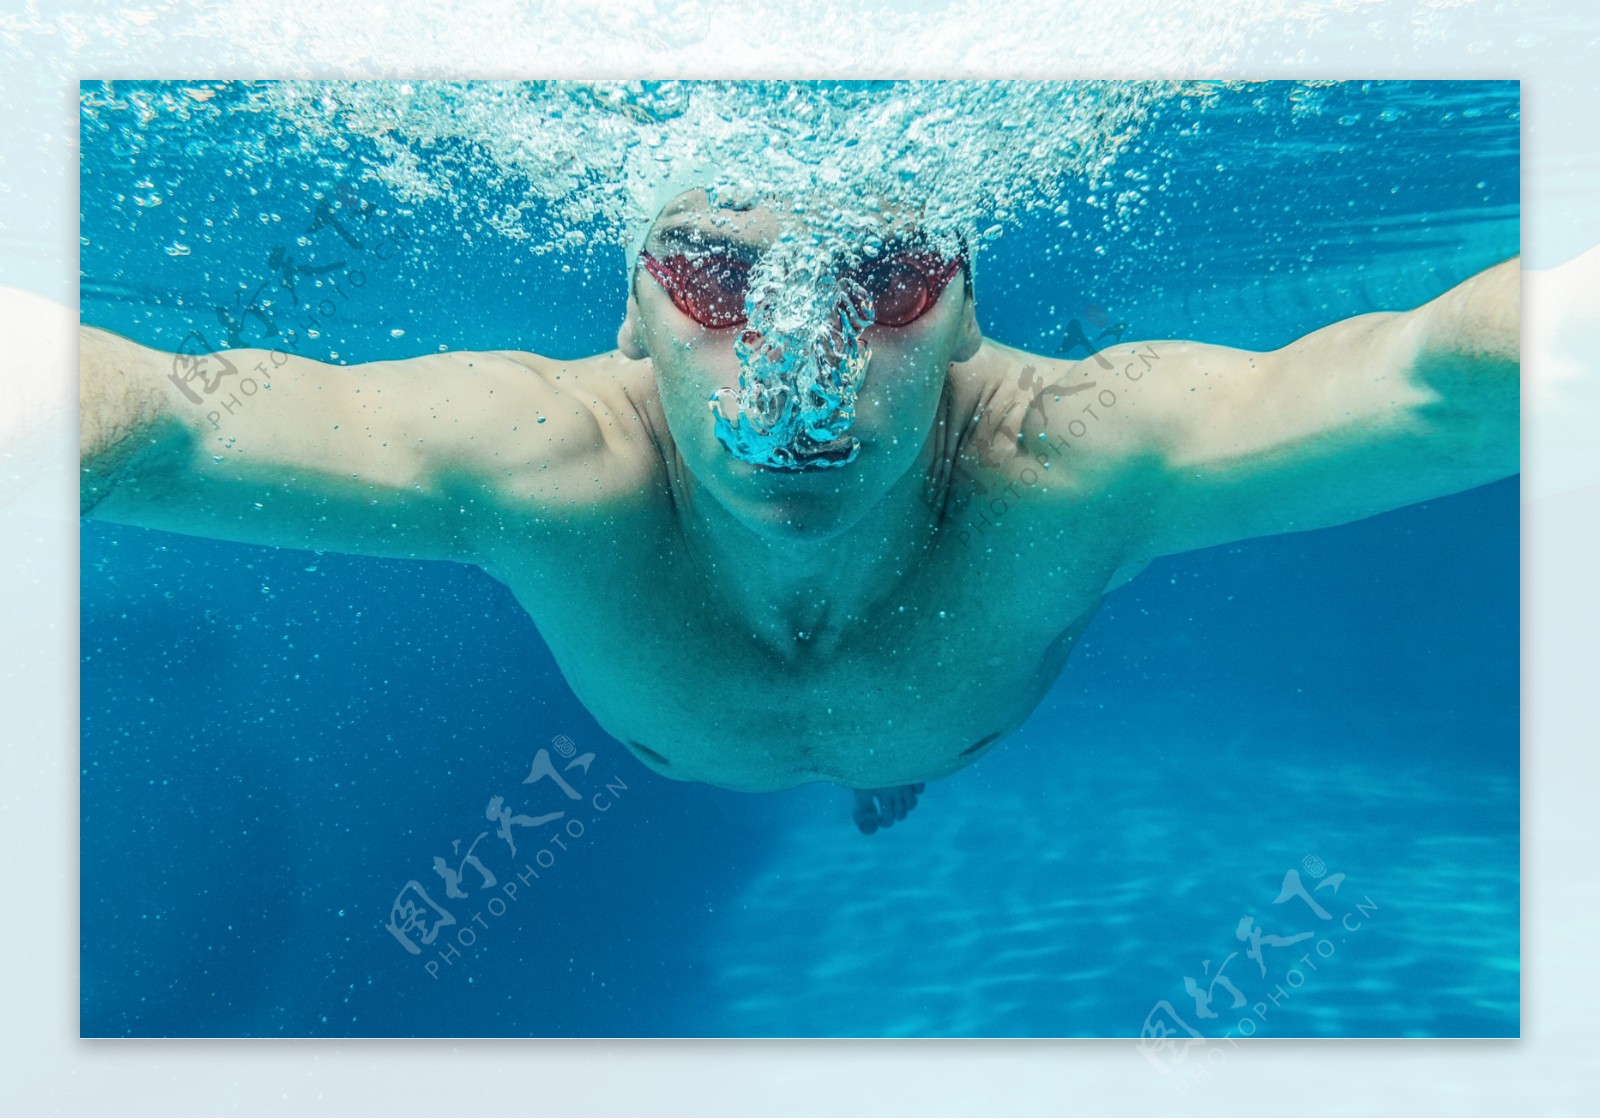 吐泡泡的游泳运动员图片